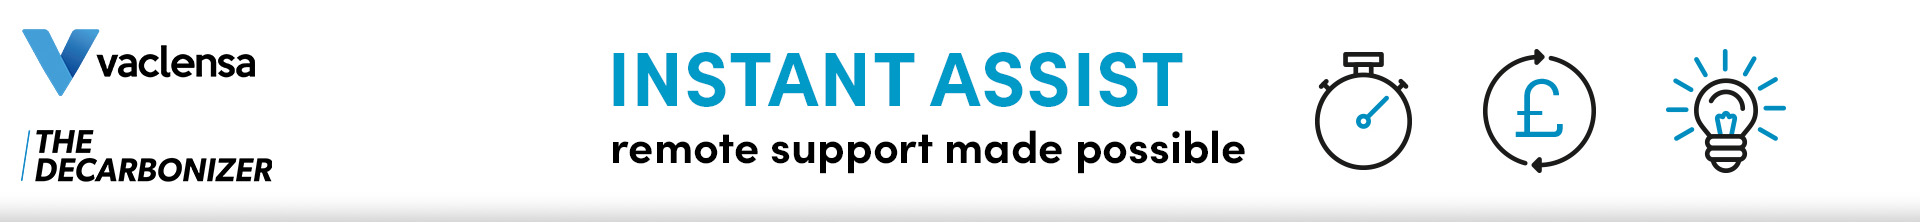 Instant Assist - live support via mobile, tablet, or laptop